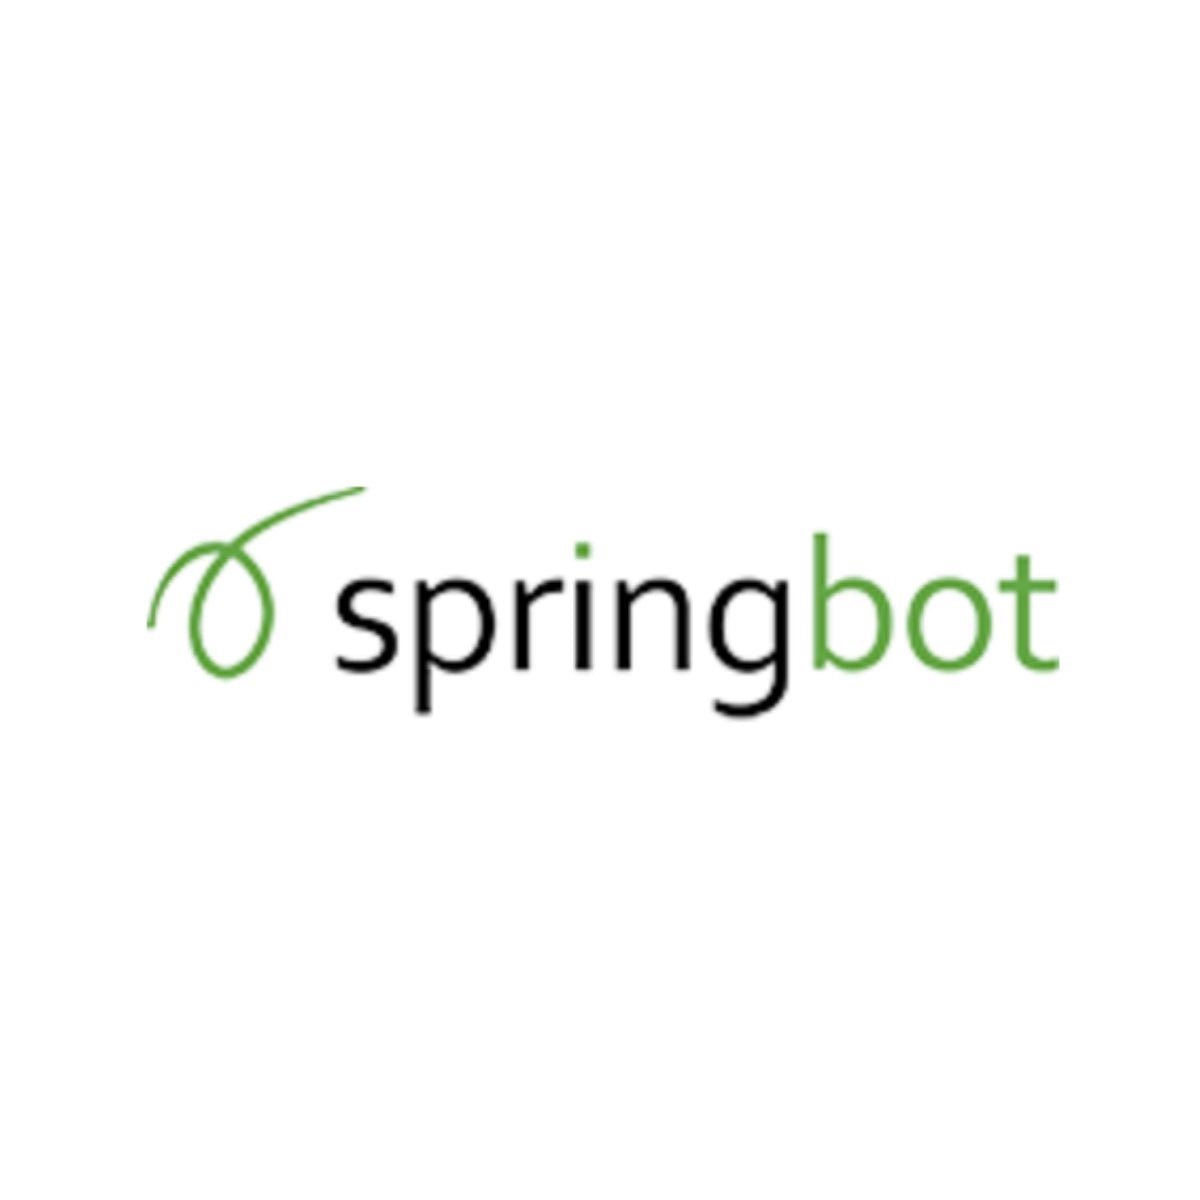 Springbot Shopify App